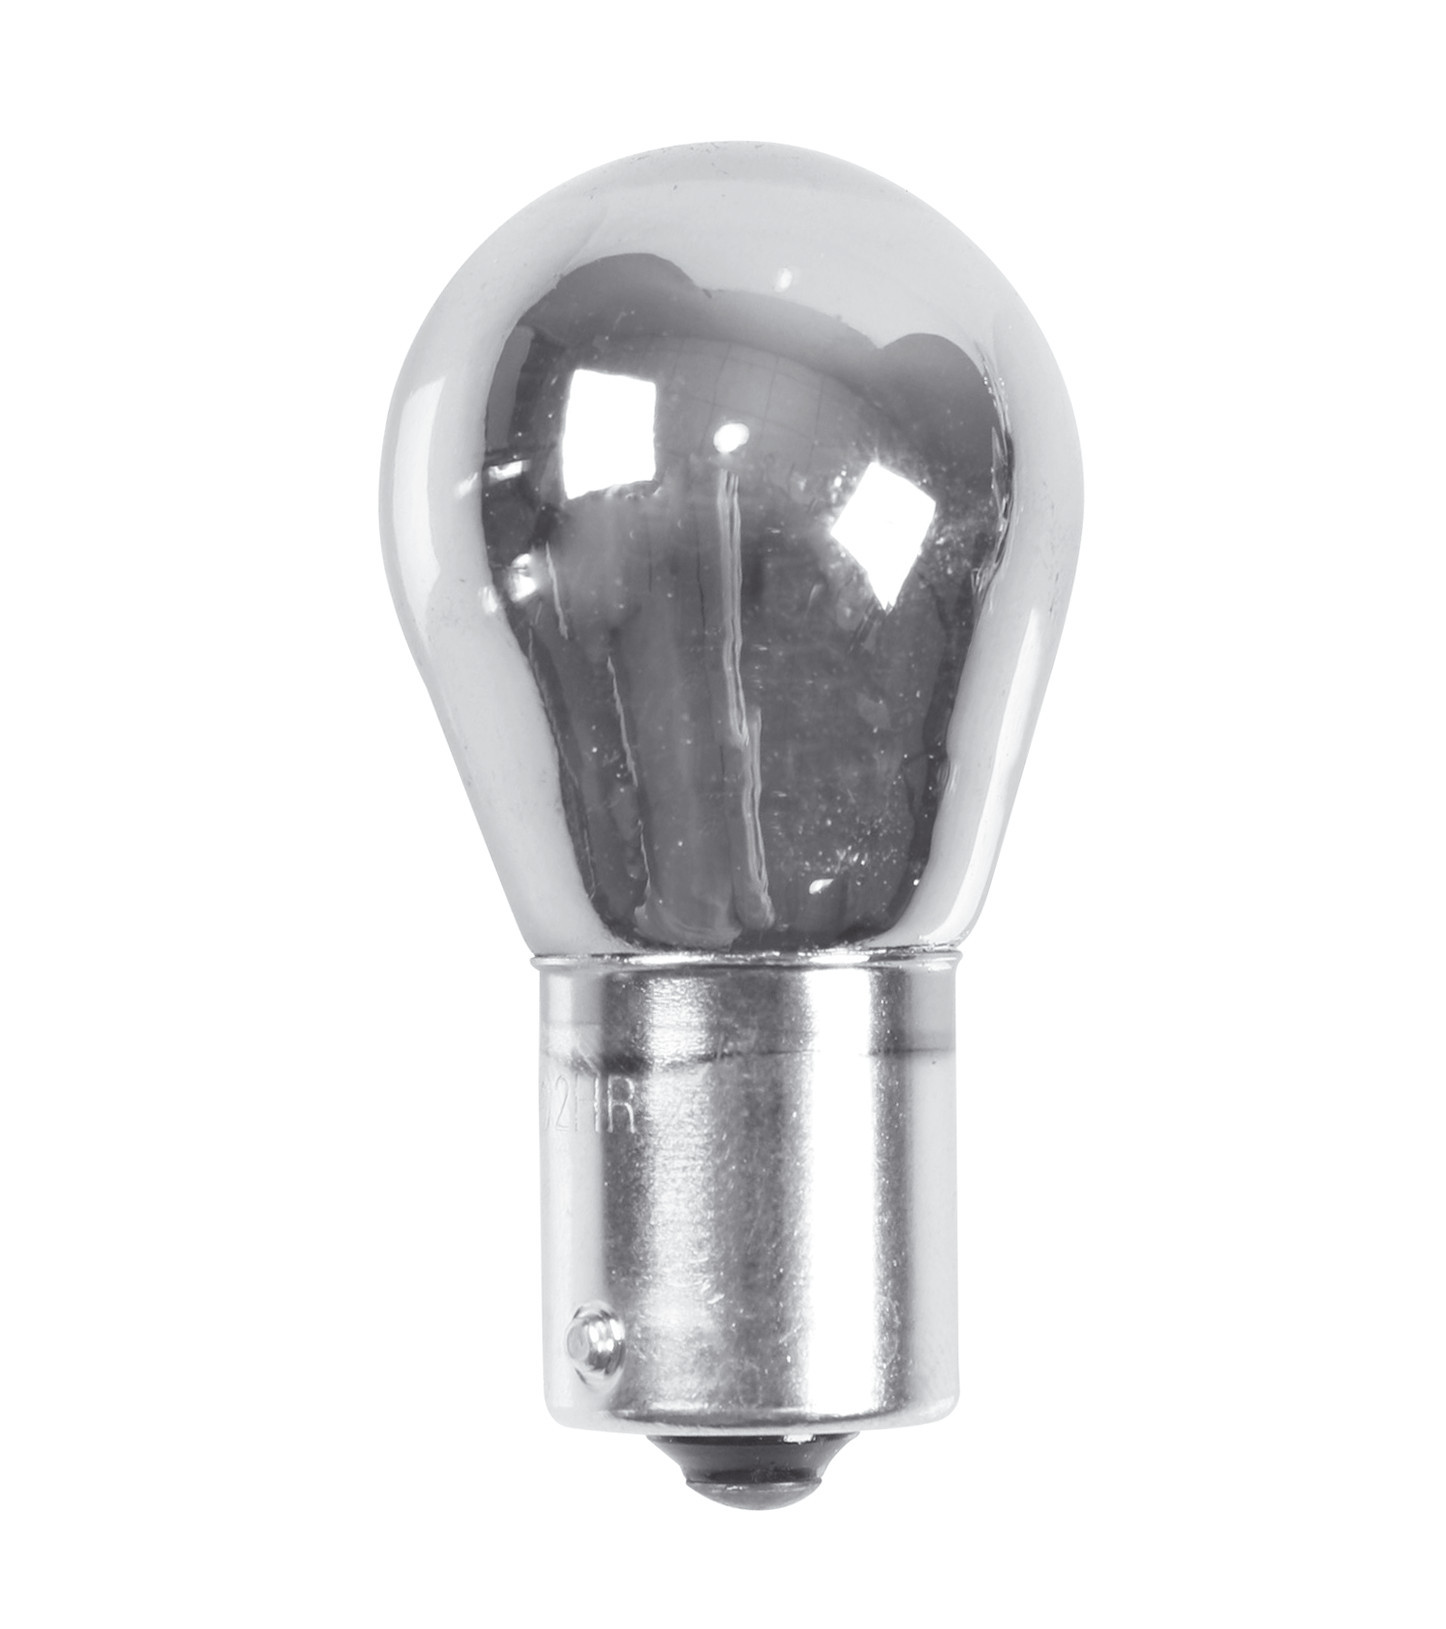 Spare bulb 12V 21W BA15s sim single filament lamp 2pcs - Chrome/White thumb